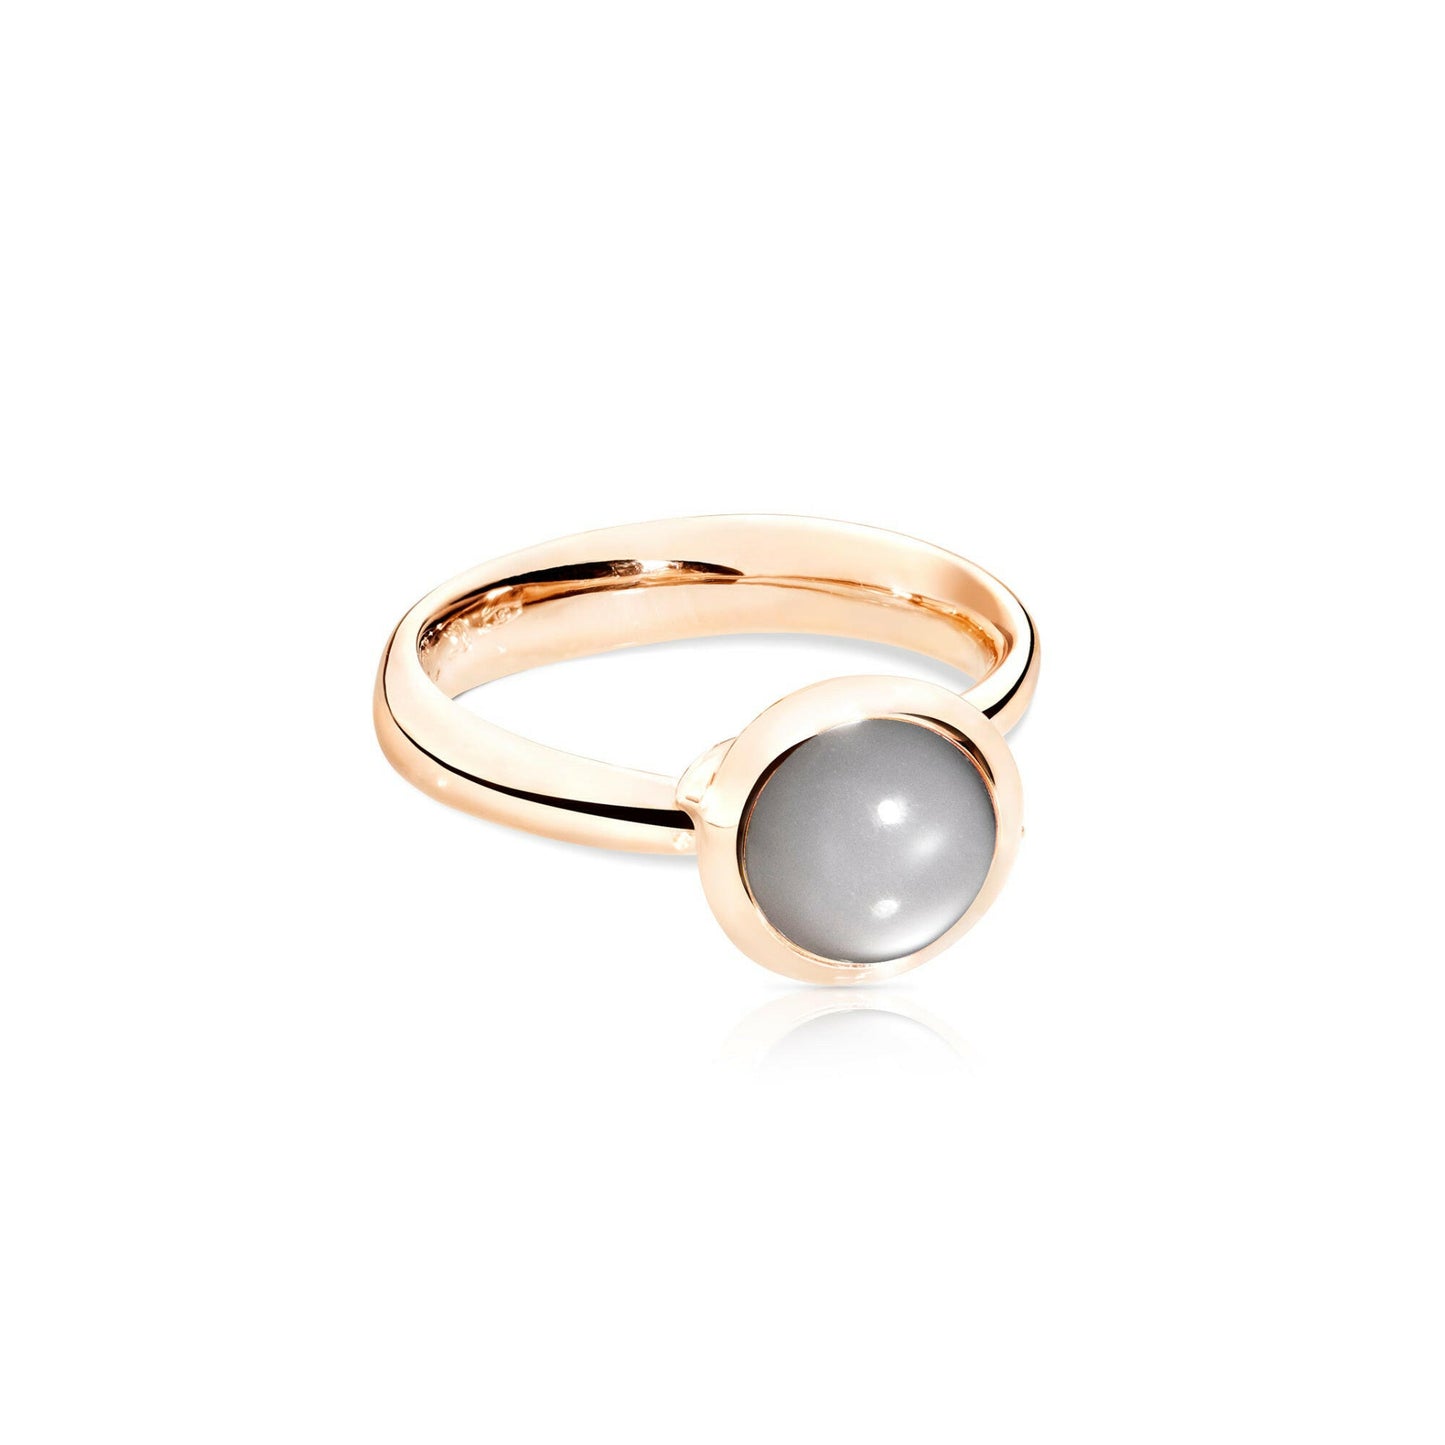 BOUTON Ring small grauer Mondstein von Tamara Comolli (Ref. R-Bou-s-MoGr-rg)